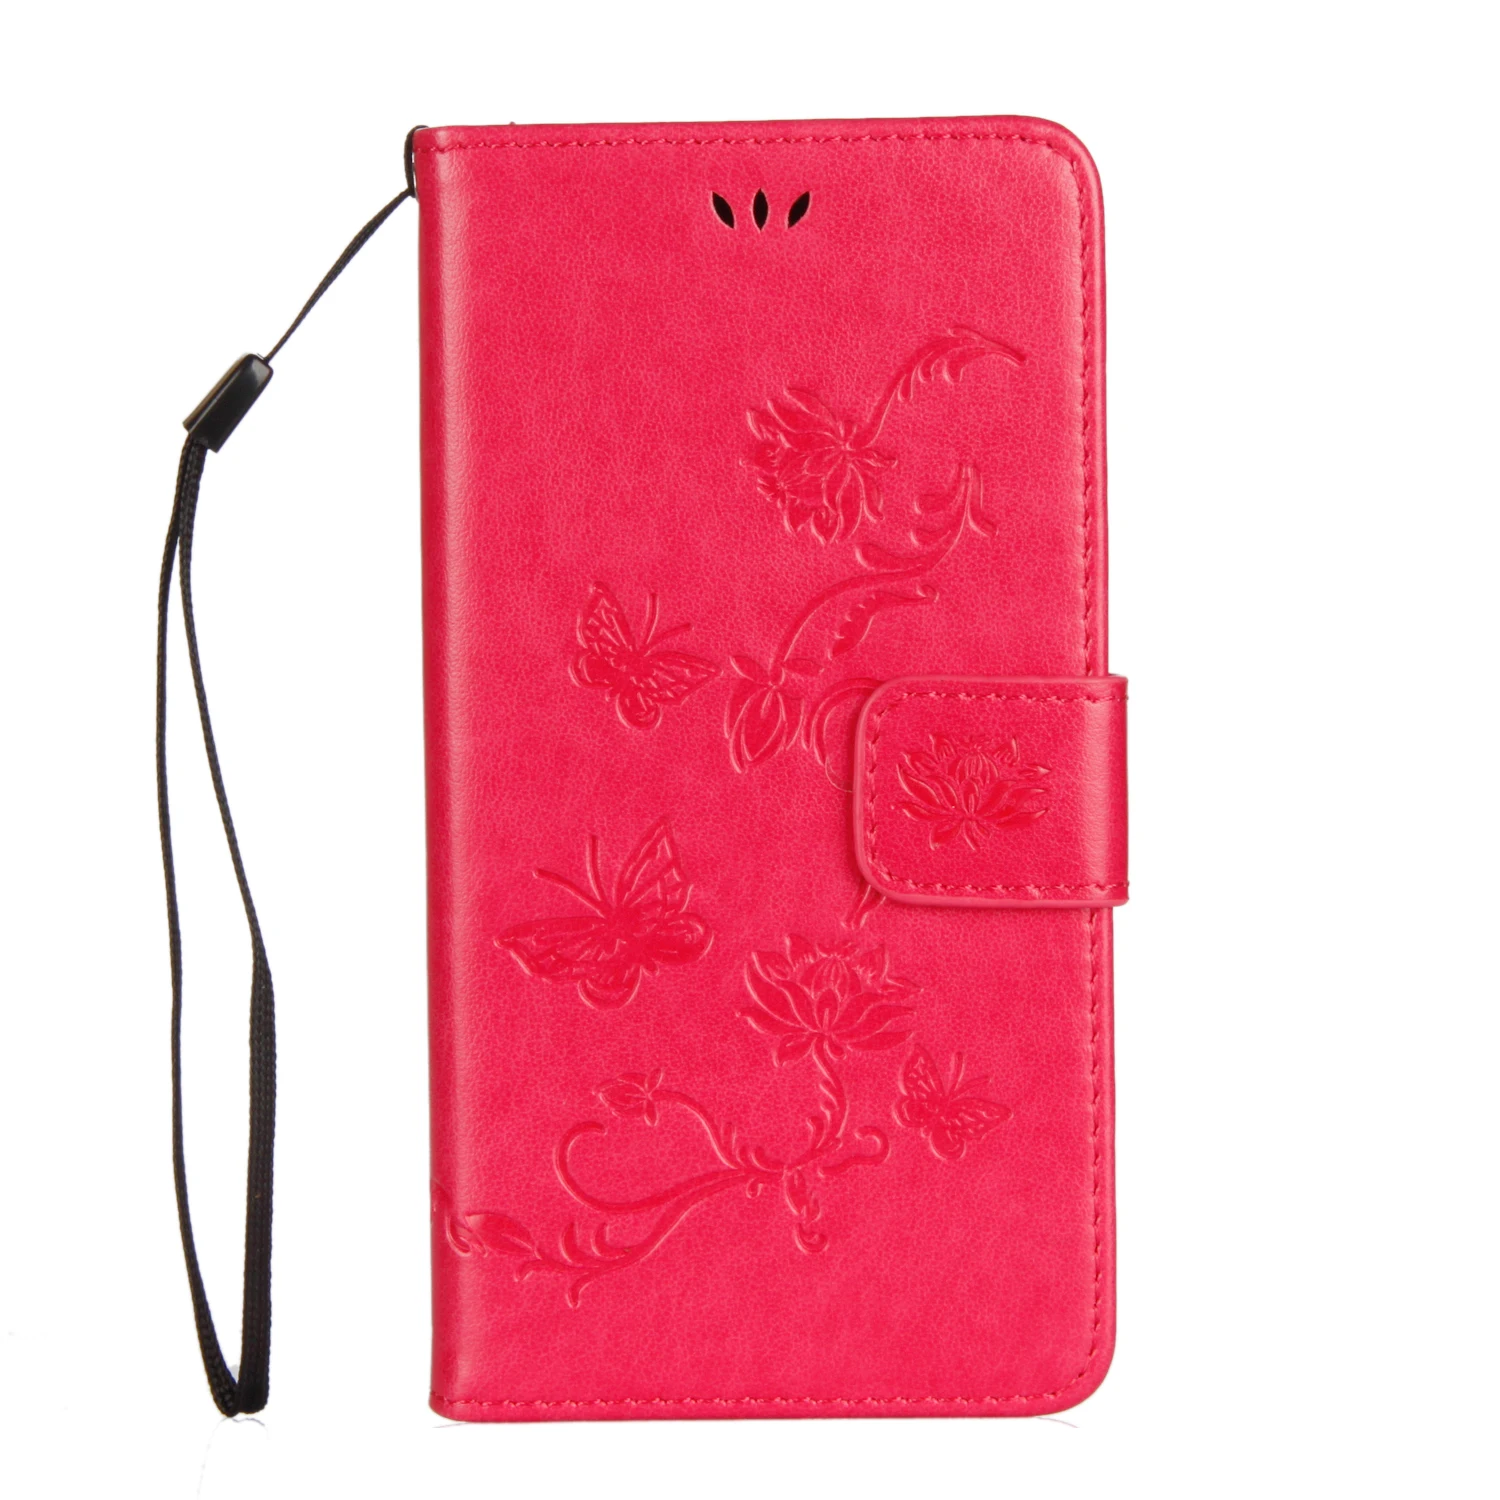 Флип чехол для SONY Xperia XZ premiun G8141 G8142 случае телефон кожаный чехол Xperia X Z premiun XZpremiun Бумажник кремния сумка Капа - Цвет: Красный